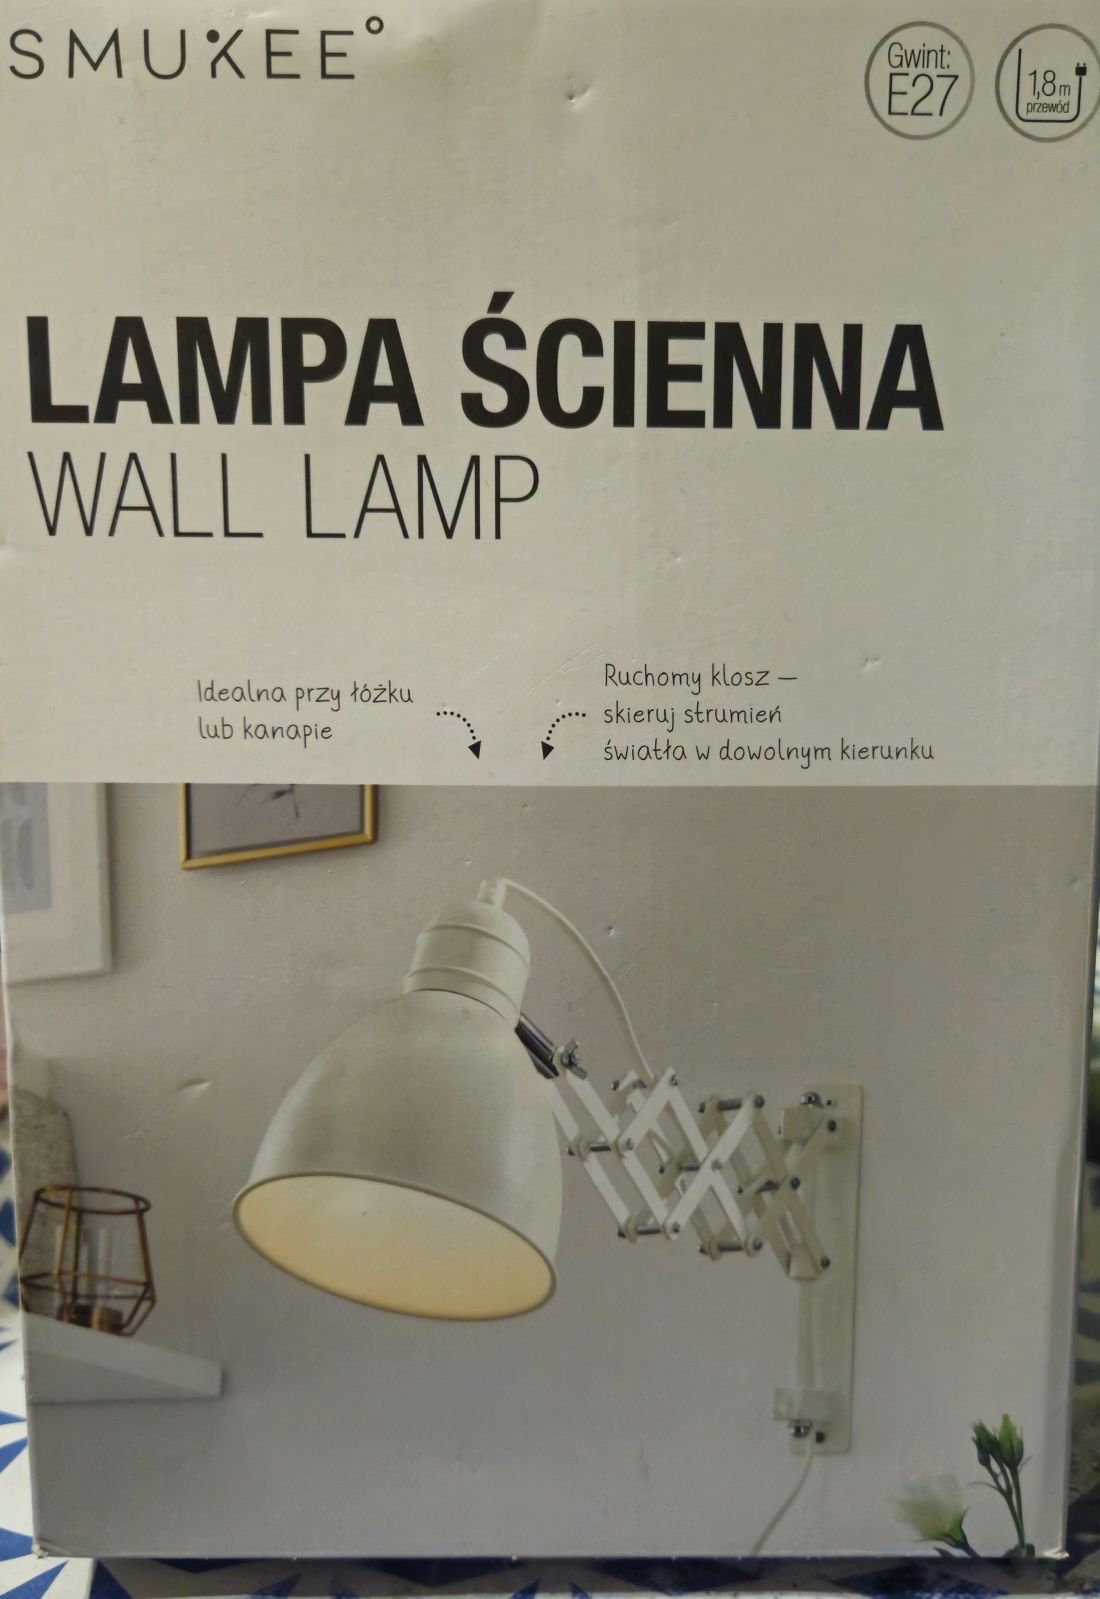 SMUKEE lampa ścienna
WALL LAMP
O
Gwint:
E27
18m
przewod
L